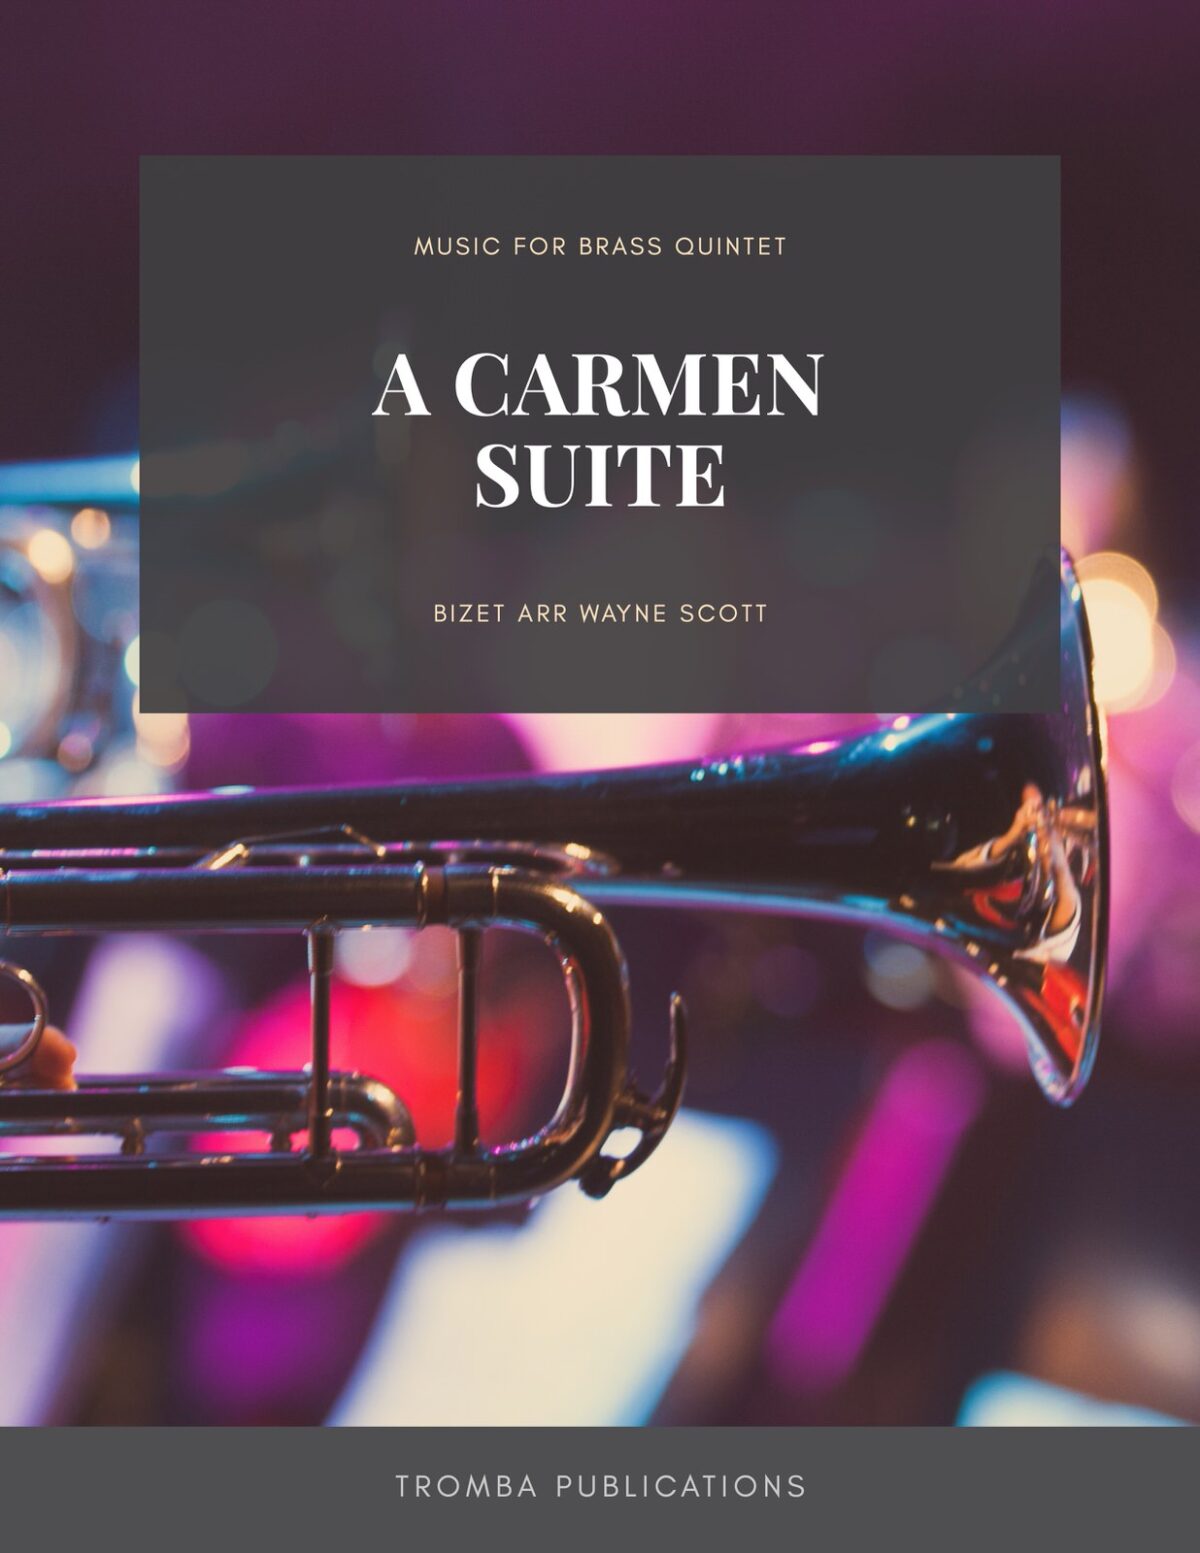 A Carmen Suite for Brass Quintet